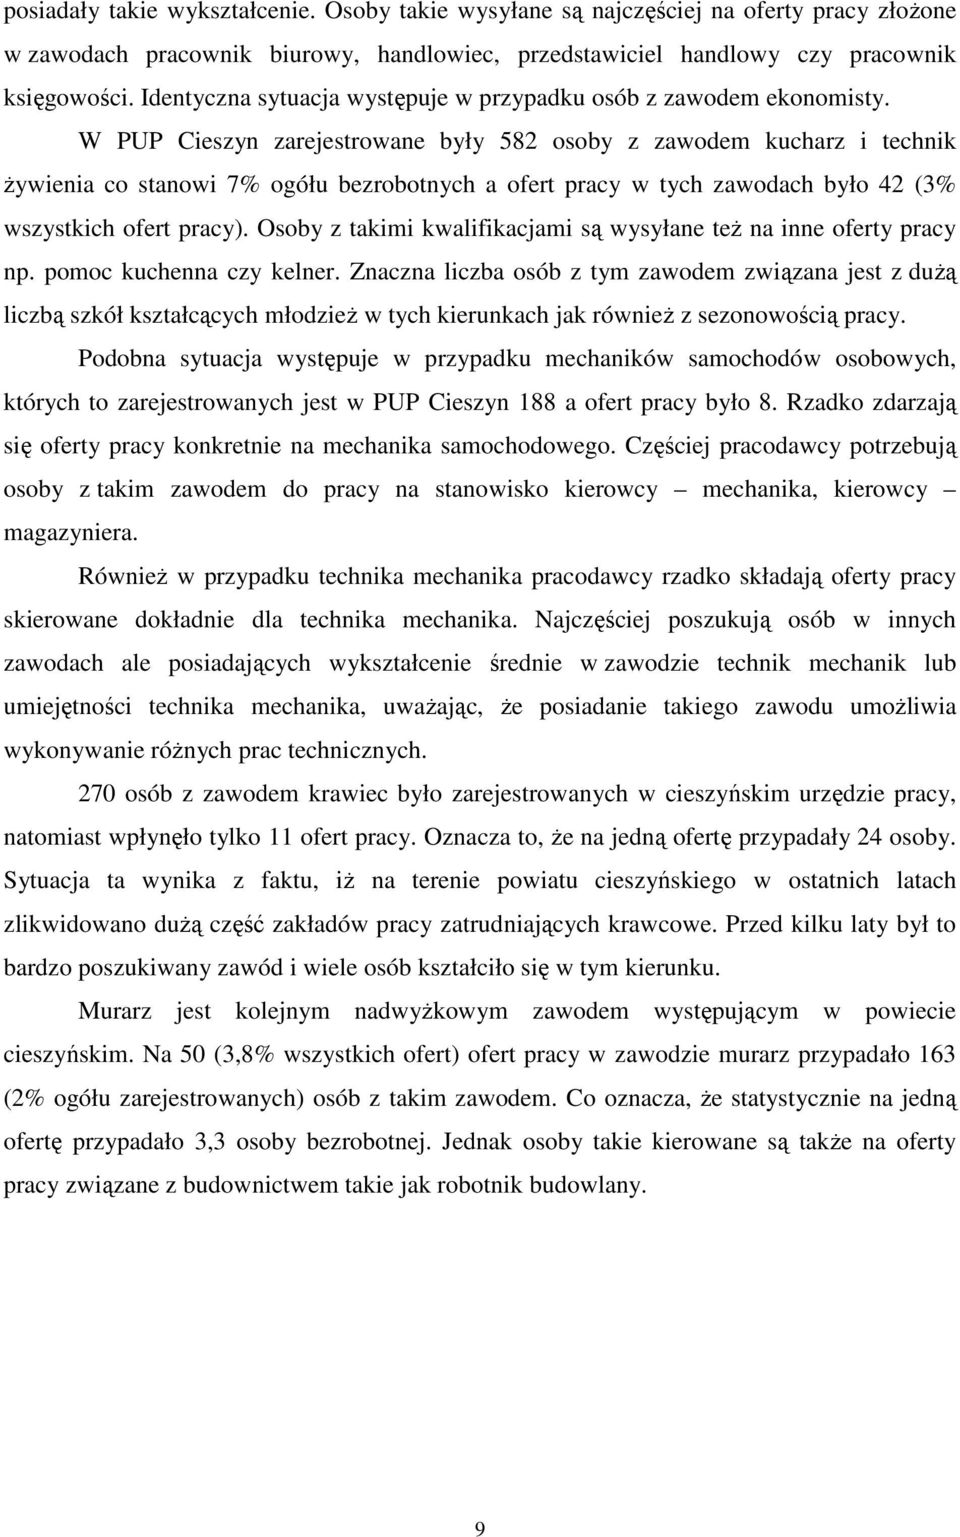 W PUP Cieszyn zarejestrowane były 582 osoby z zawodem kucharz i technik Ŝywienia co stanowi 7% ogółu bezrobotnych a ofert pracy w tych zawodach było 42 (3% wszystkich ofert pracy).